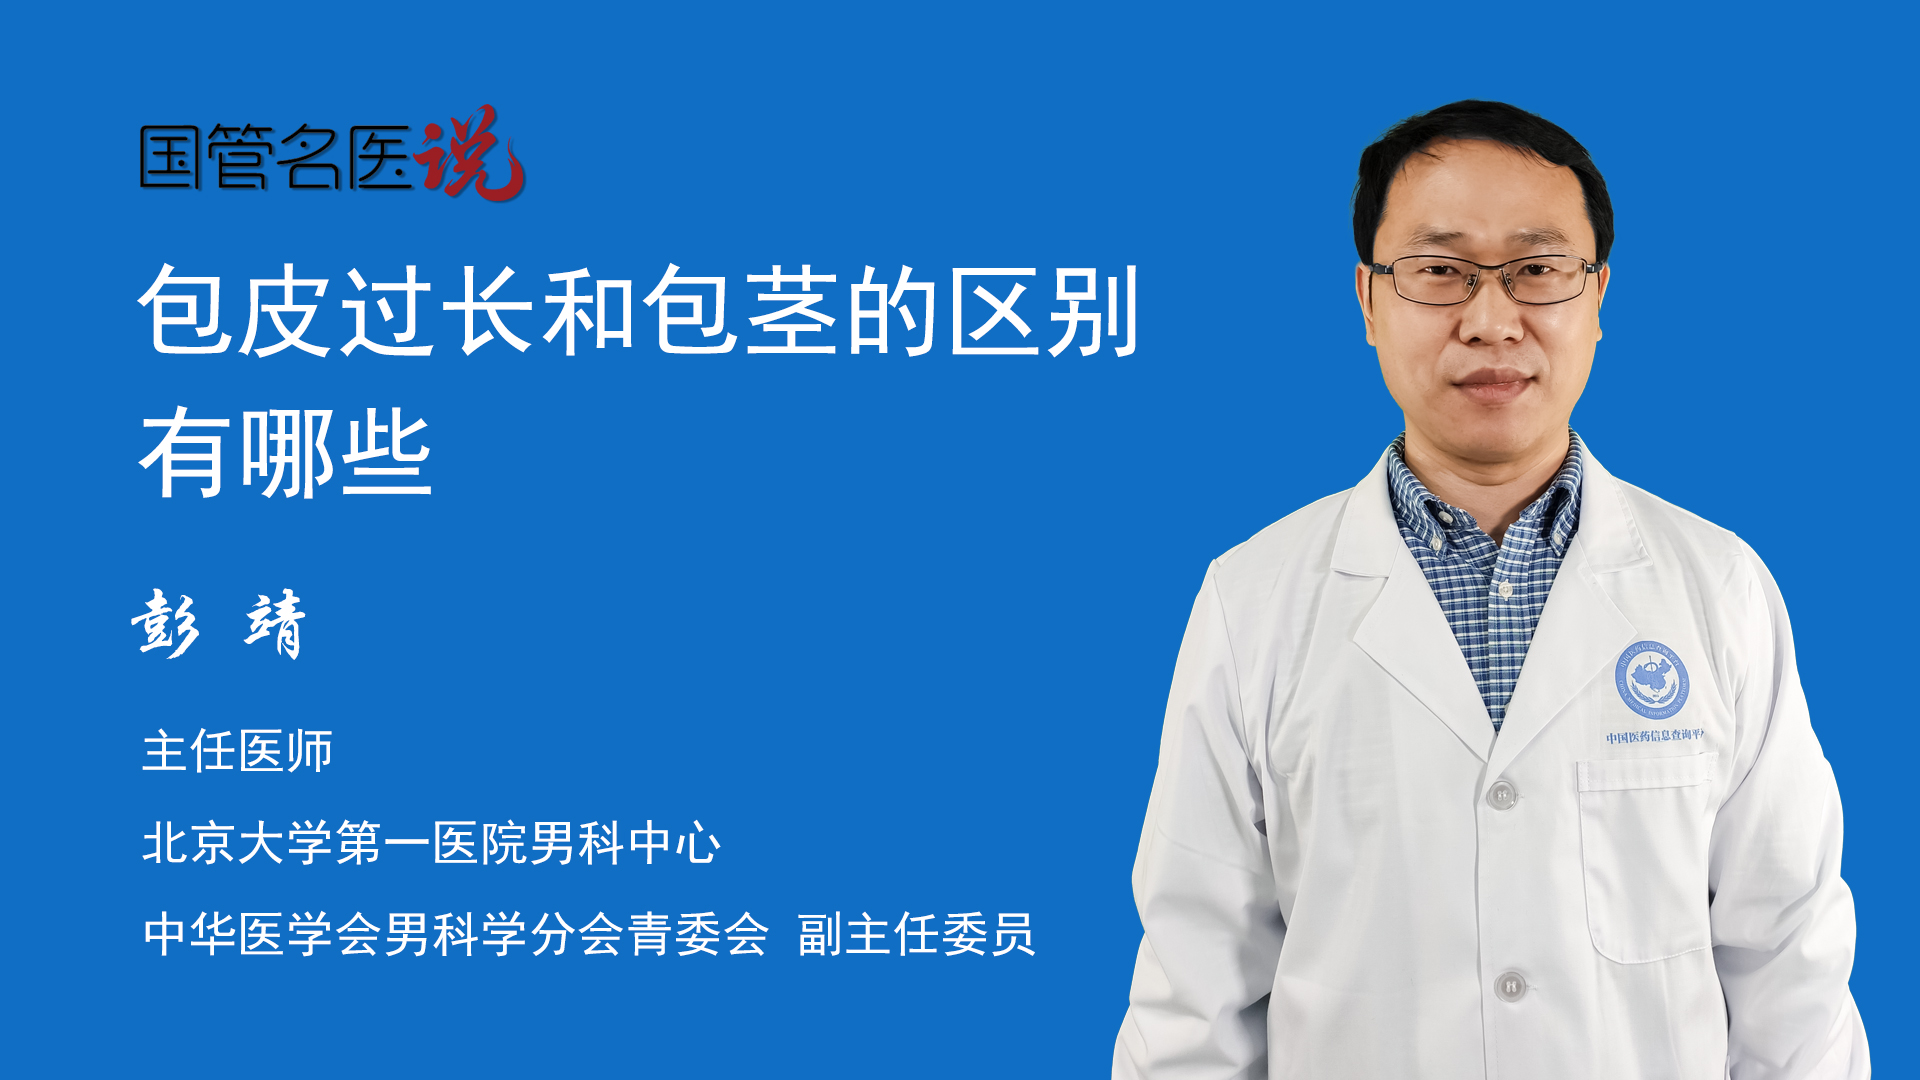 男人包茎过长有什么影响吗-中国医药信息查询平台